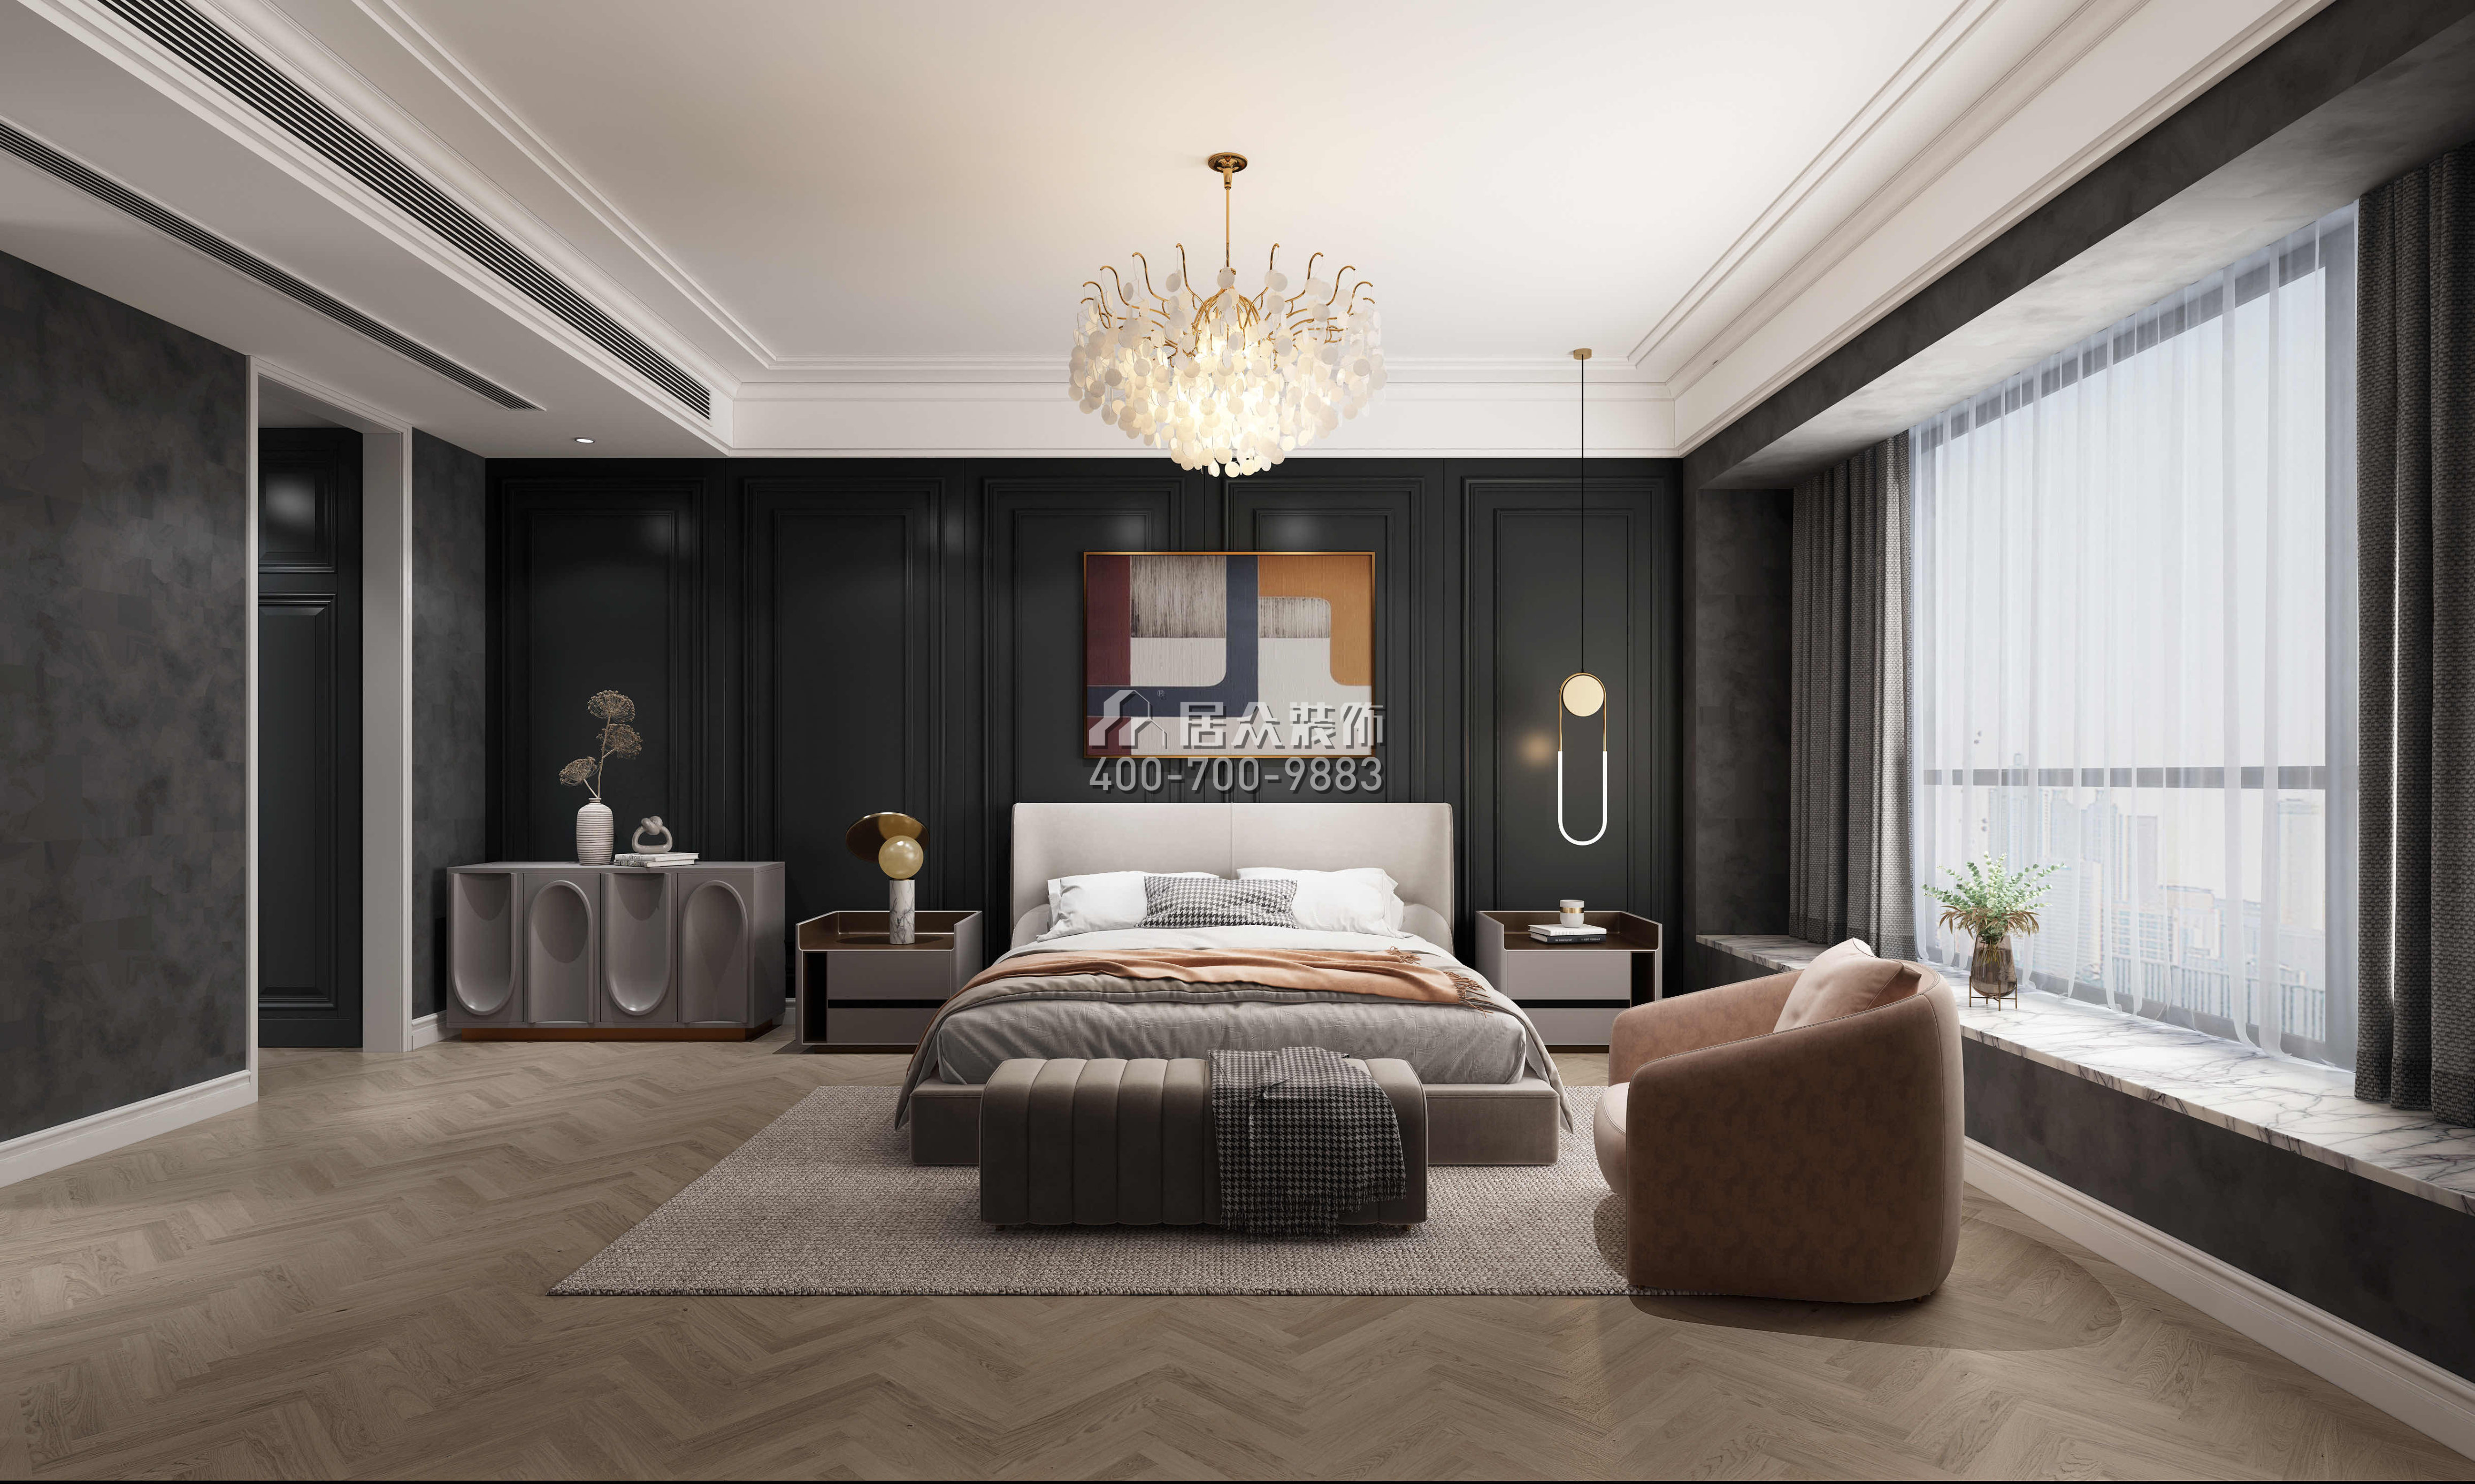 华润城润府156平方米欧式风格平层户型卧室装修效果图